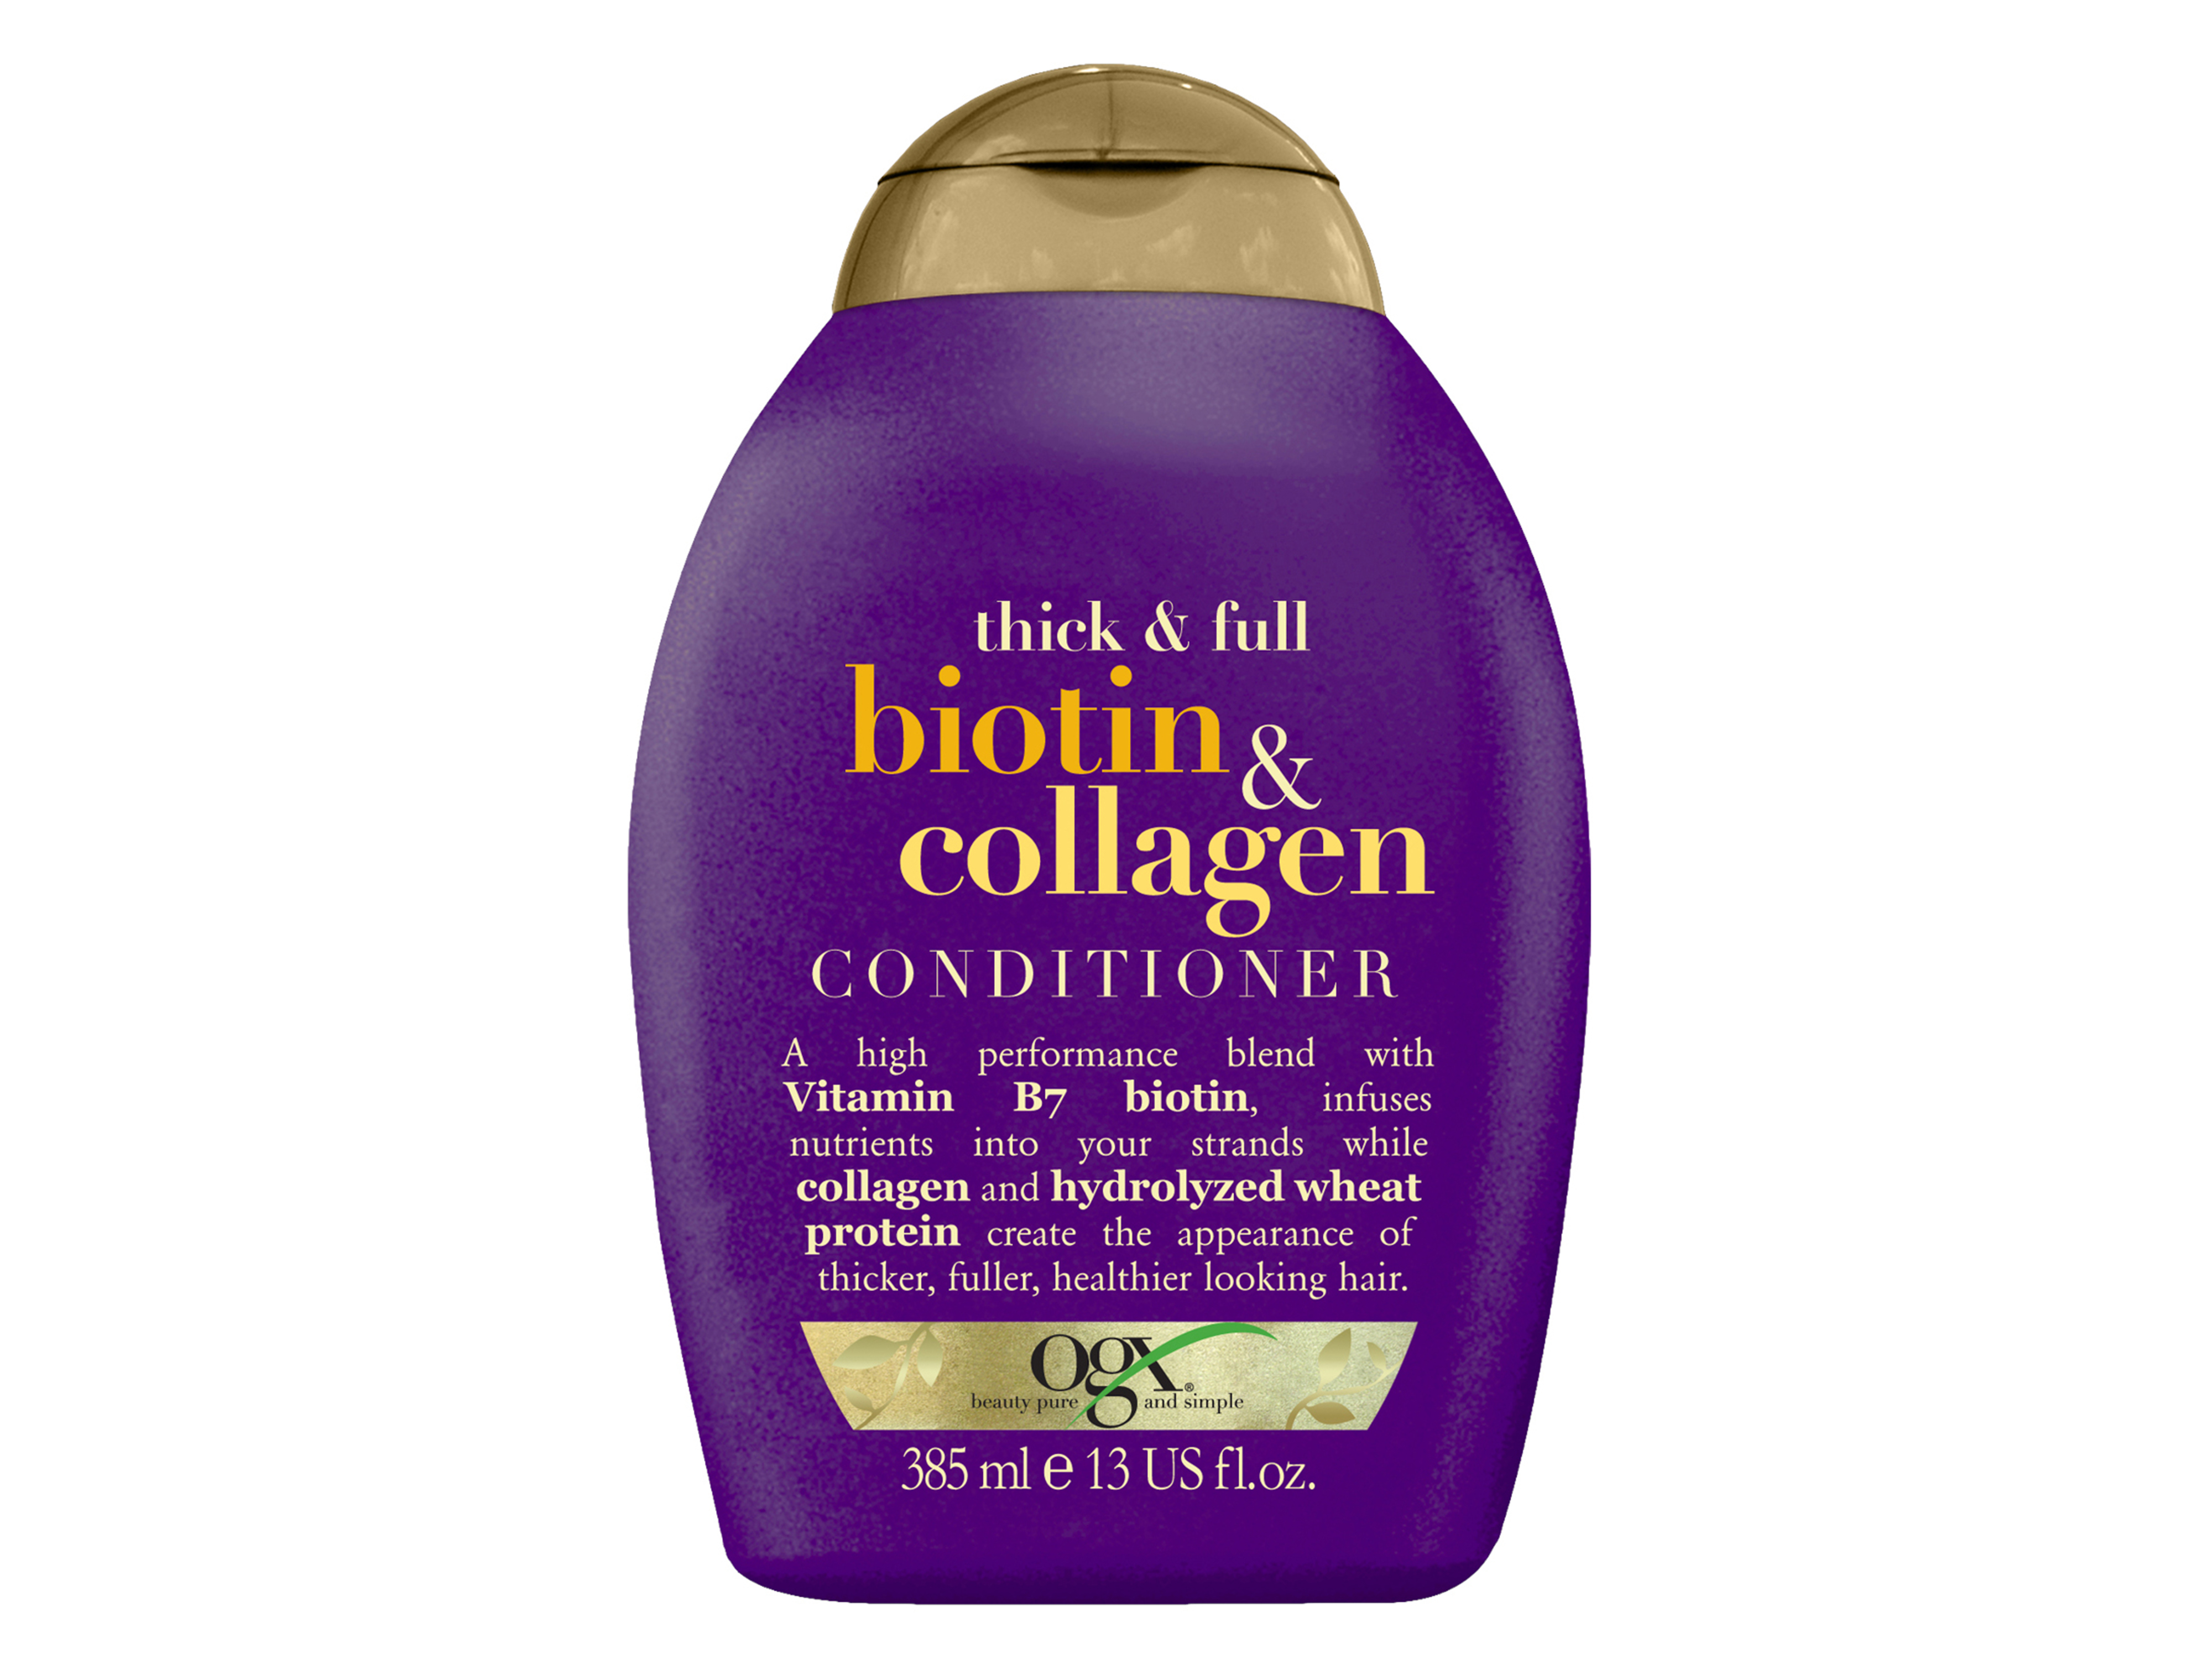 Ogx Biotin & Collagen Conditioner, 385 ml